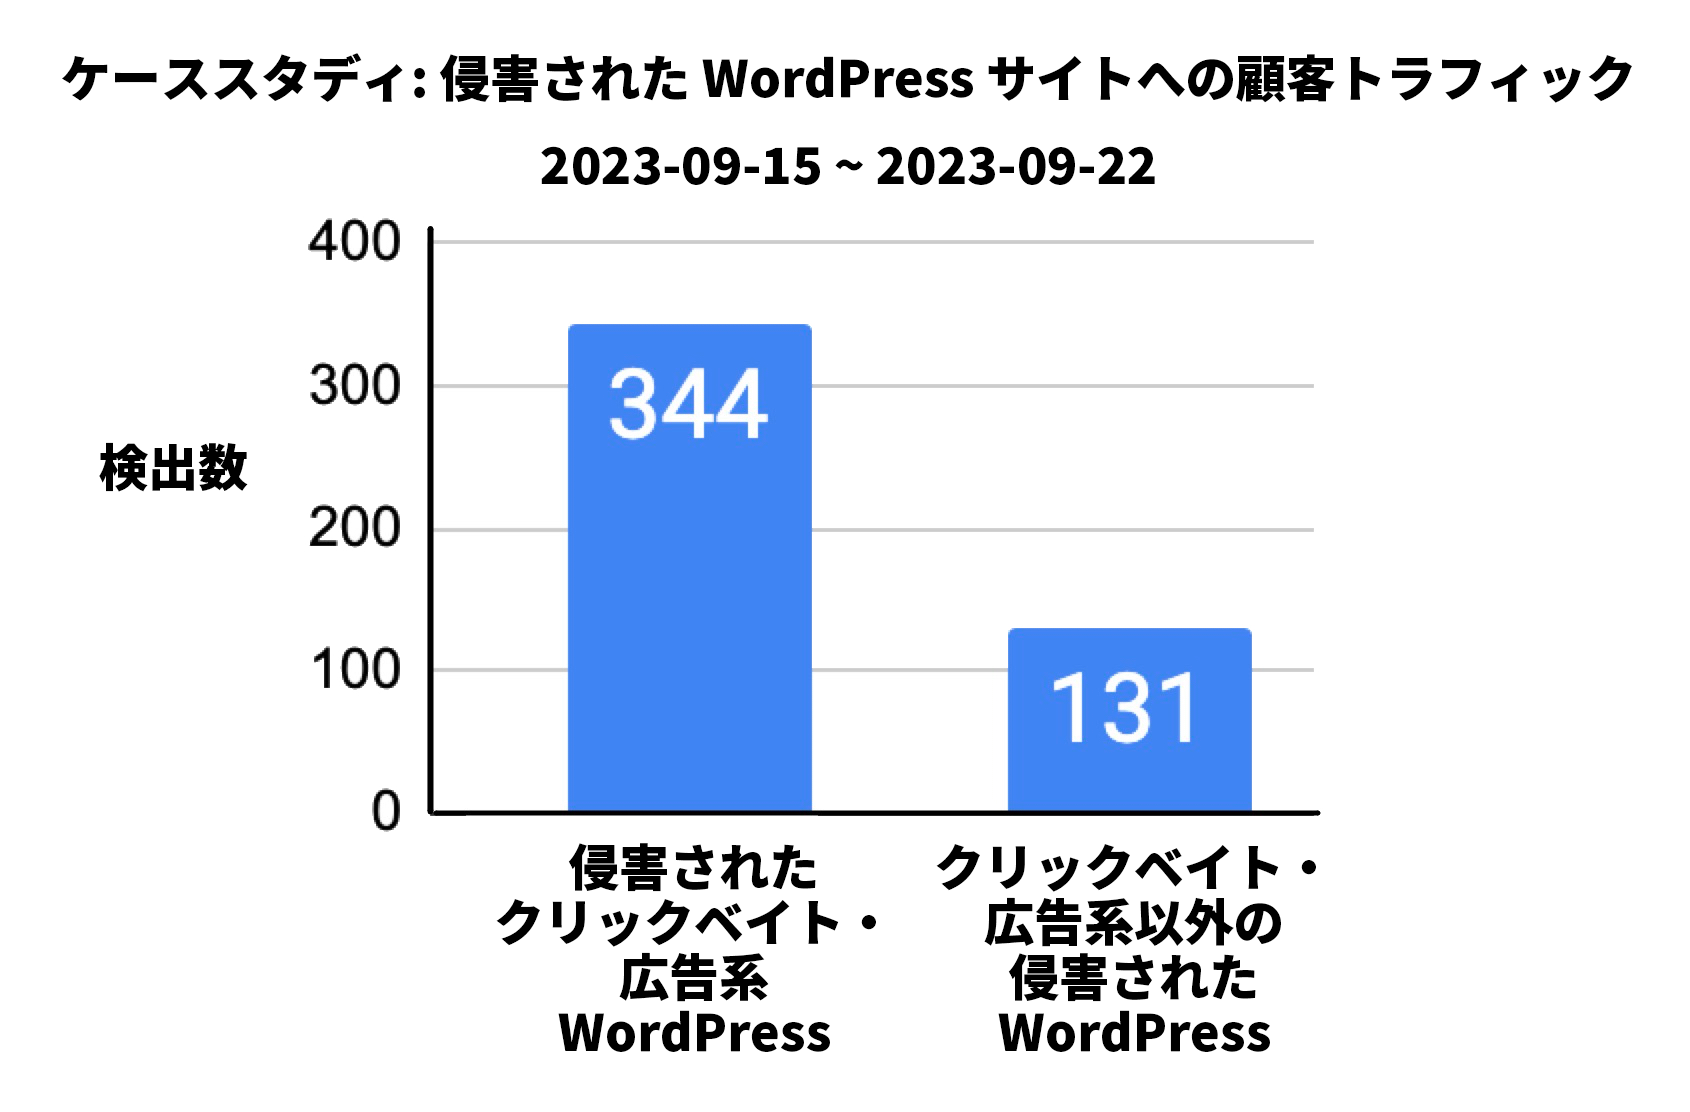 画像 9 は、侵害された WordPress またはクリックベイト/広告サイトの検出数と、それ以外のカテゴリーの侵害された WordPress サイトの検出数を比較したグラフです。1 つめのカテゴリーの検出数は 344 件です。2 つめのカテゴリーの検出数は 131 件です。